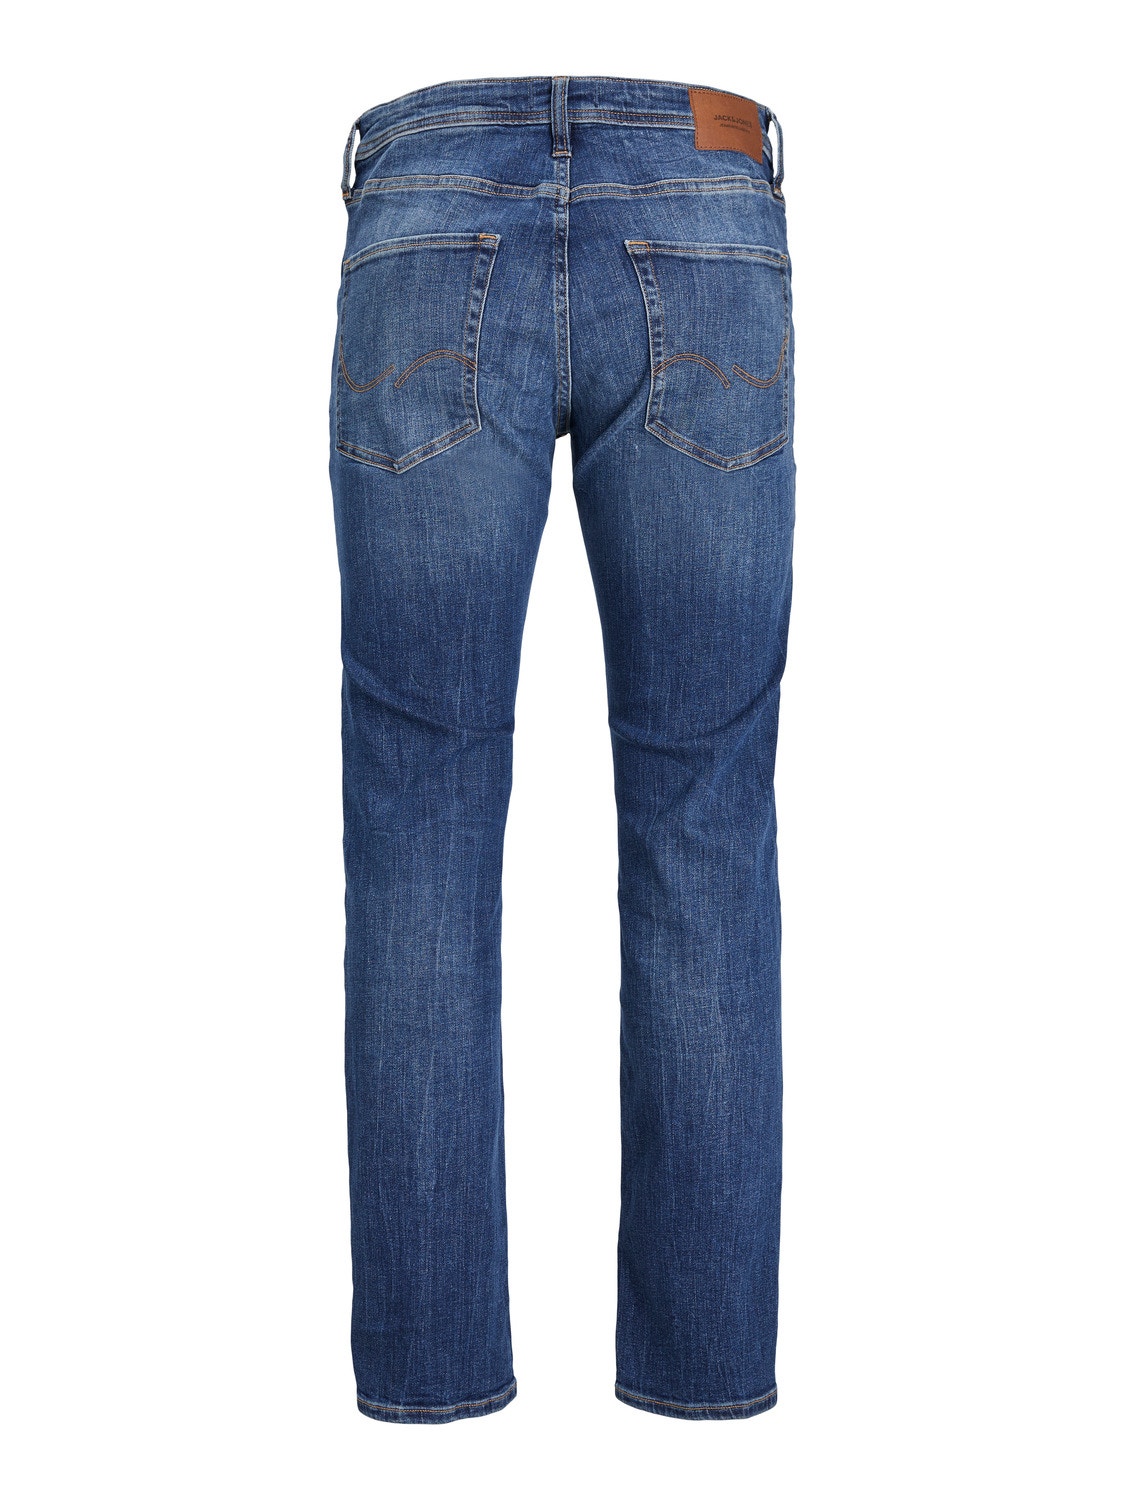 Jack & Jones JJIMIKE JJORIGINAL AM 355 Jeans Tapered Fit -Blue Denim - 12237251